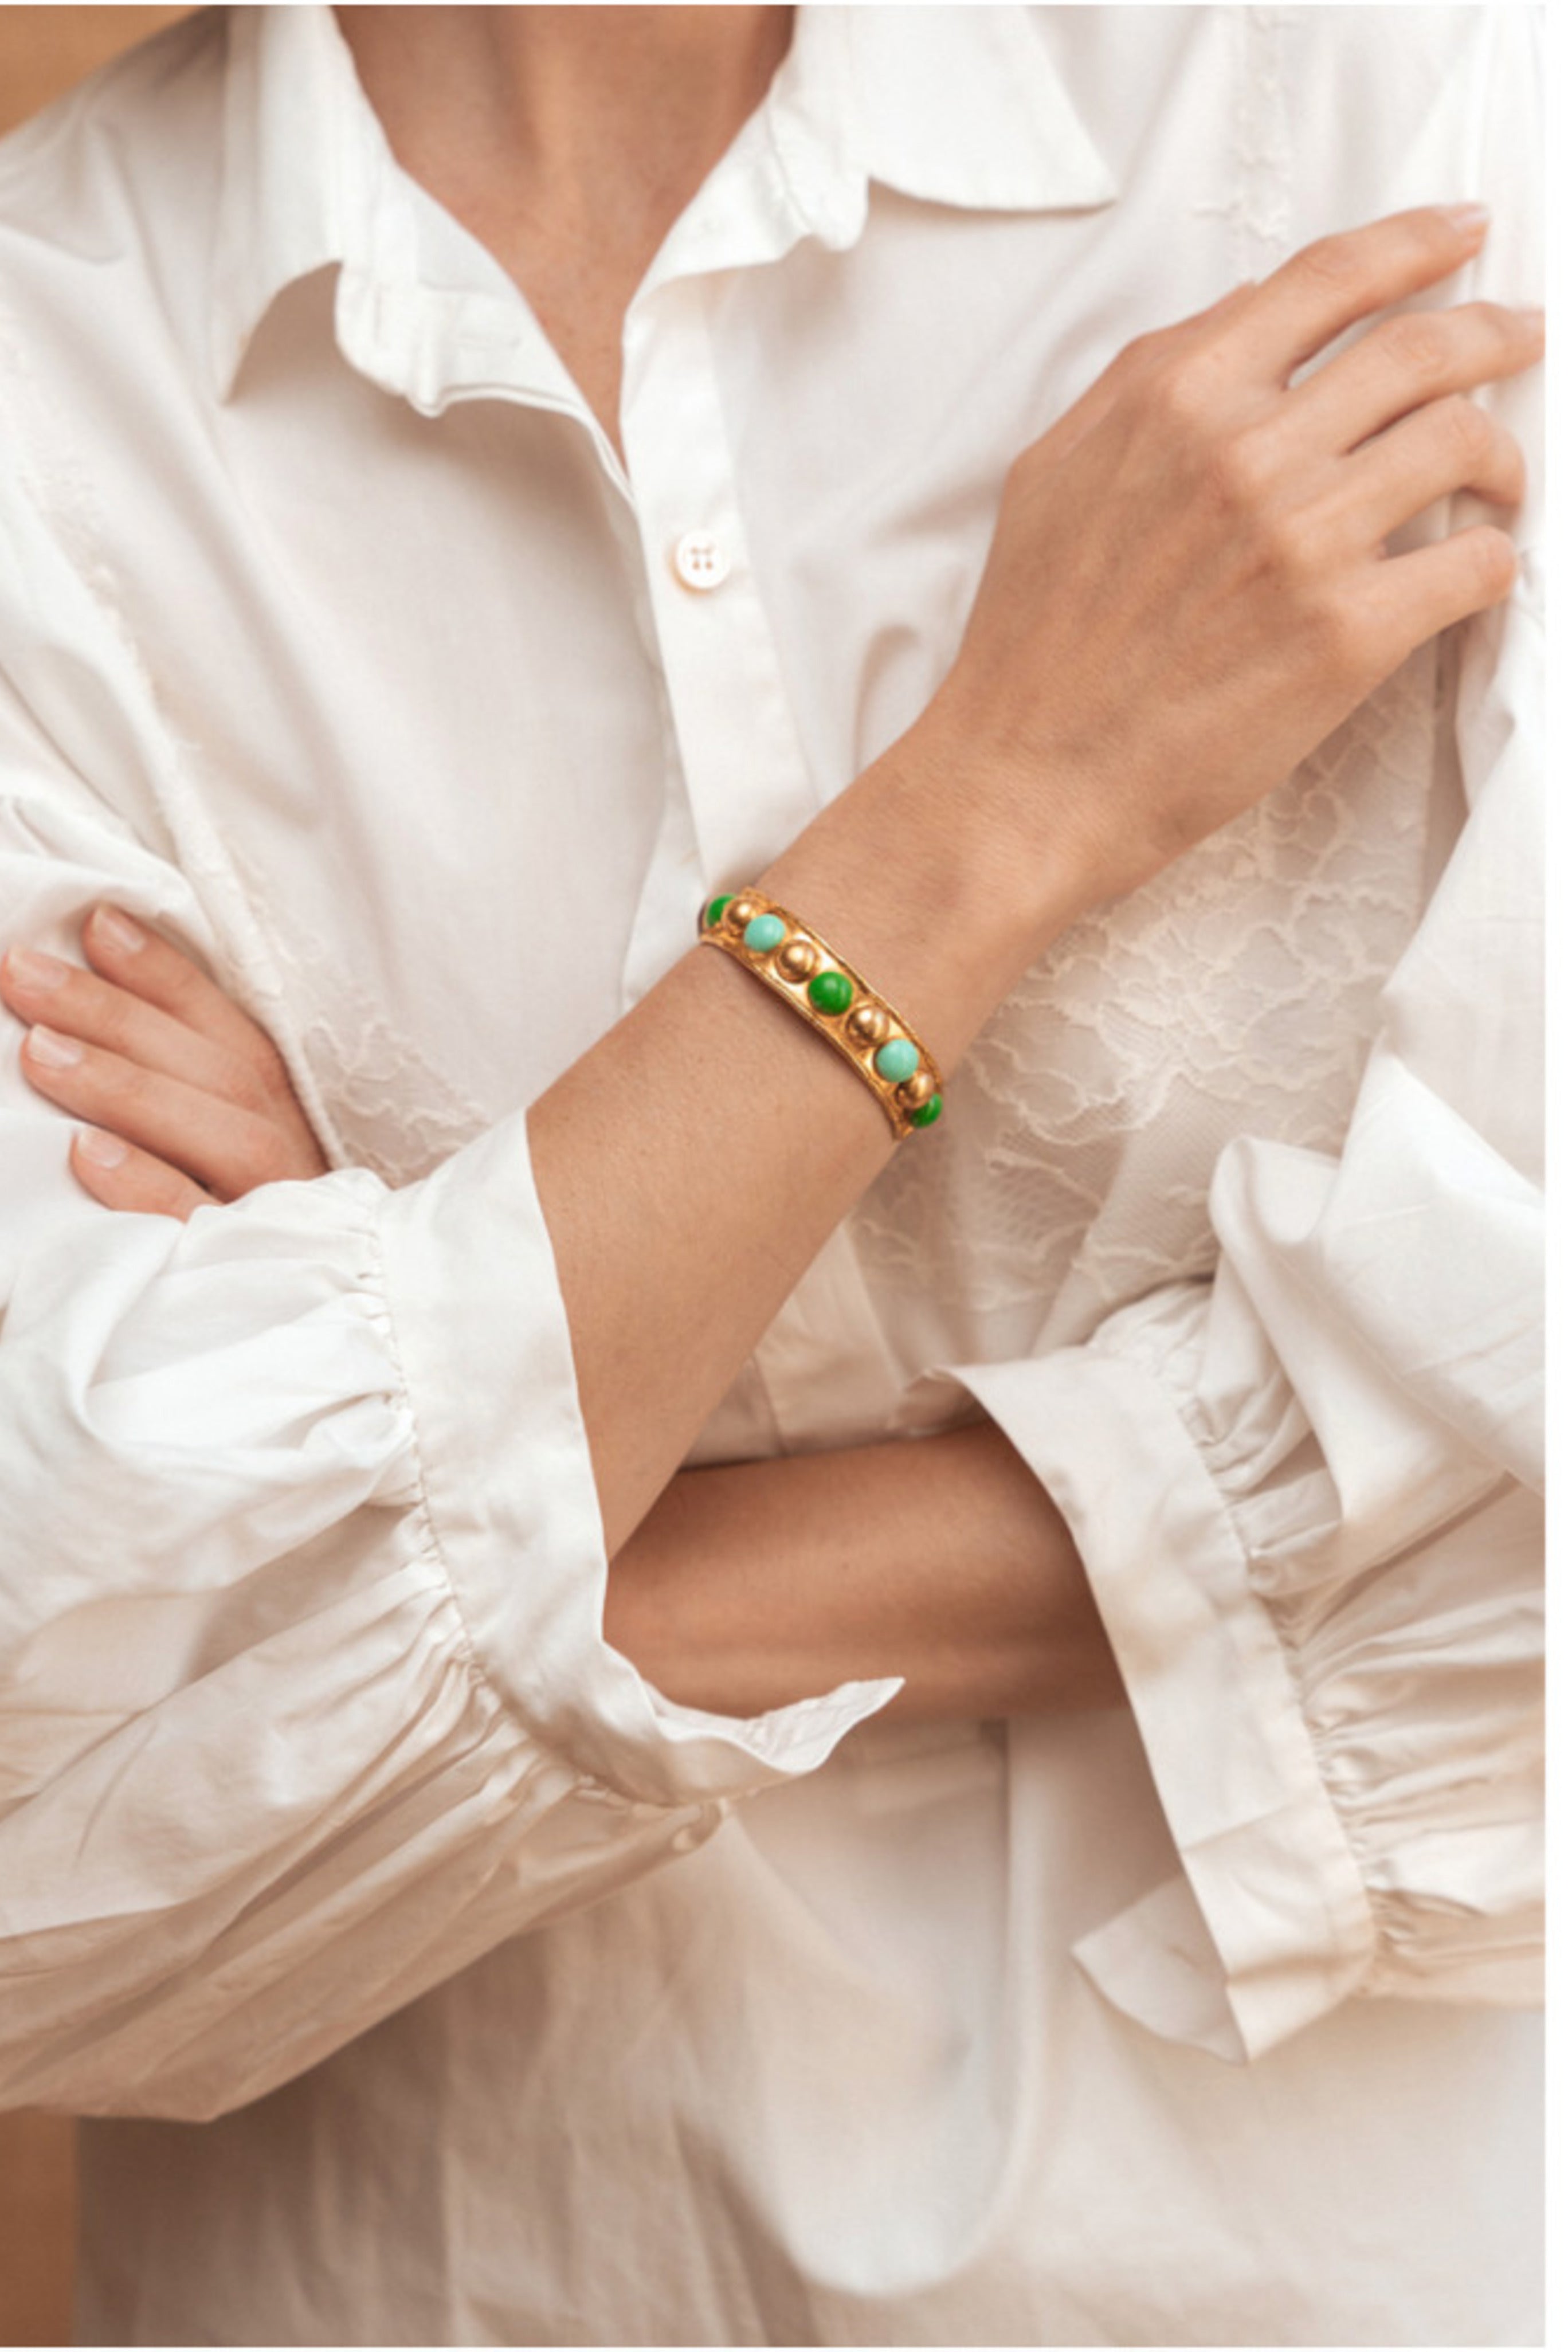 Tribal Bracelets 3 Pack | Fashion bracelets to wear everyday | Risted